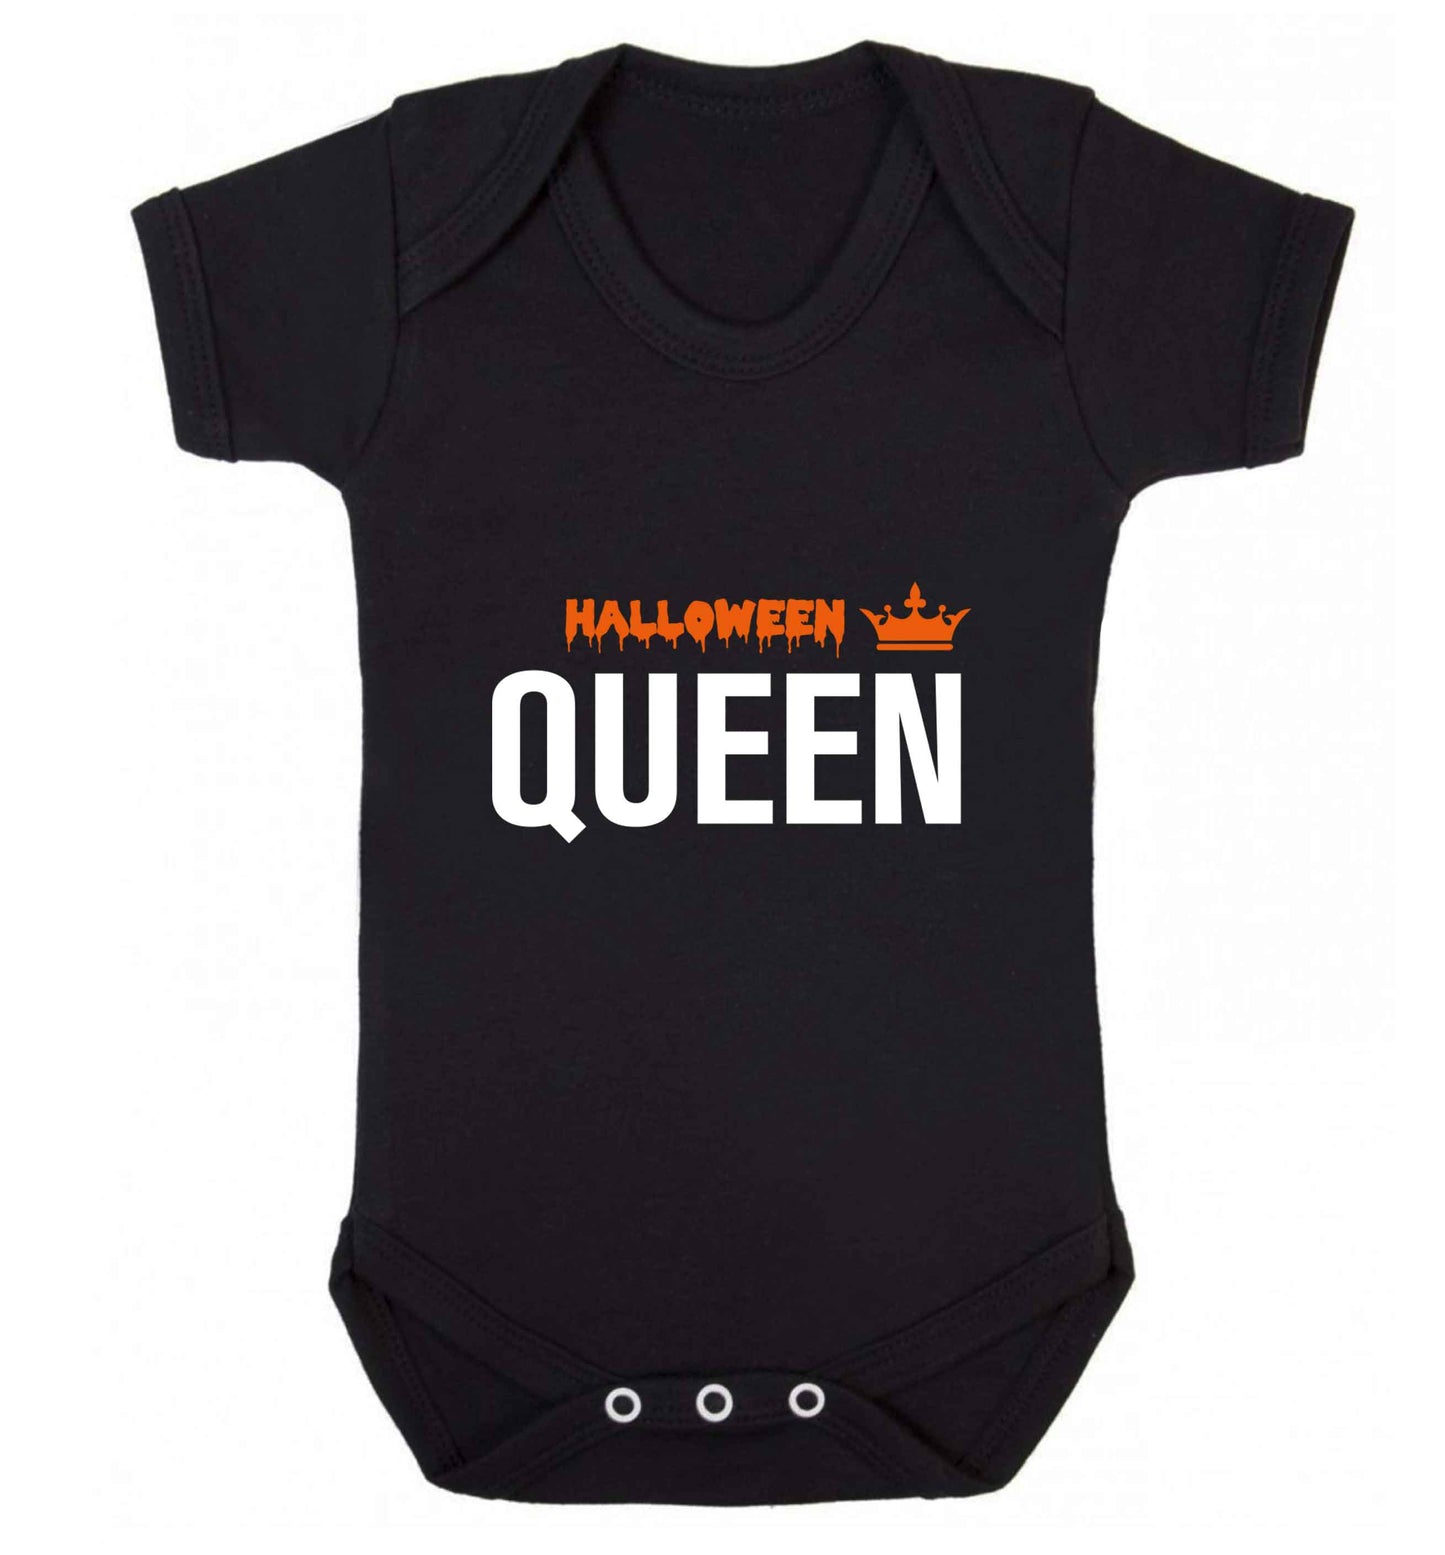 Halloween queen baby vest black 18-24 months